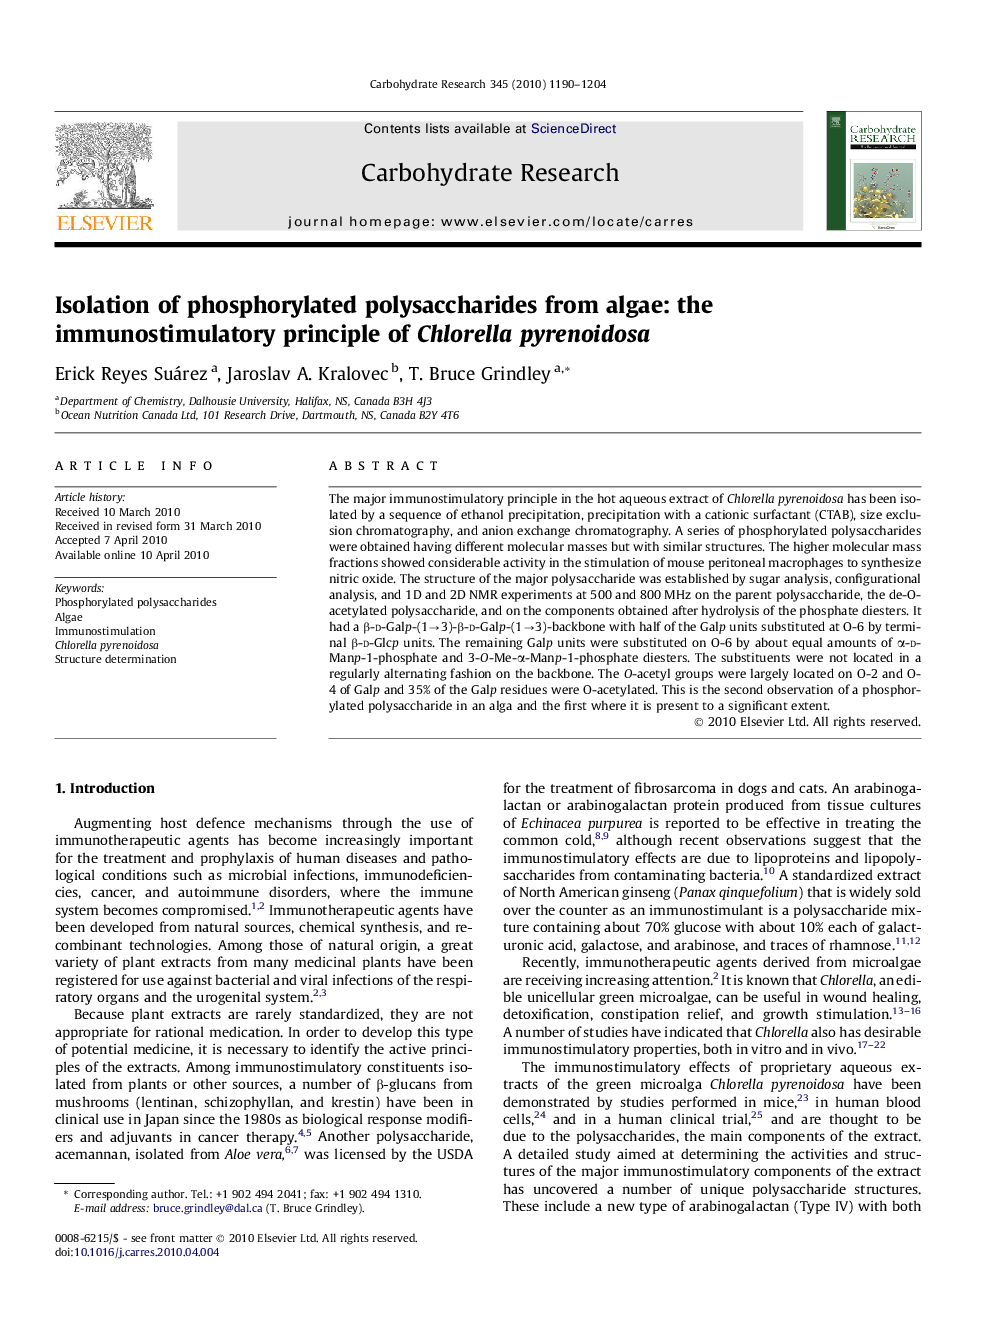 Isolation of phosphorylated polysaccharides from algae: the immunostimulatory principle of Chlorella pyrenoidosa